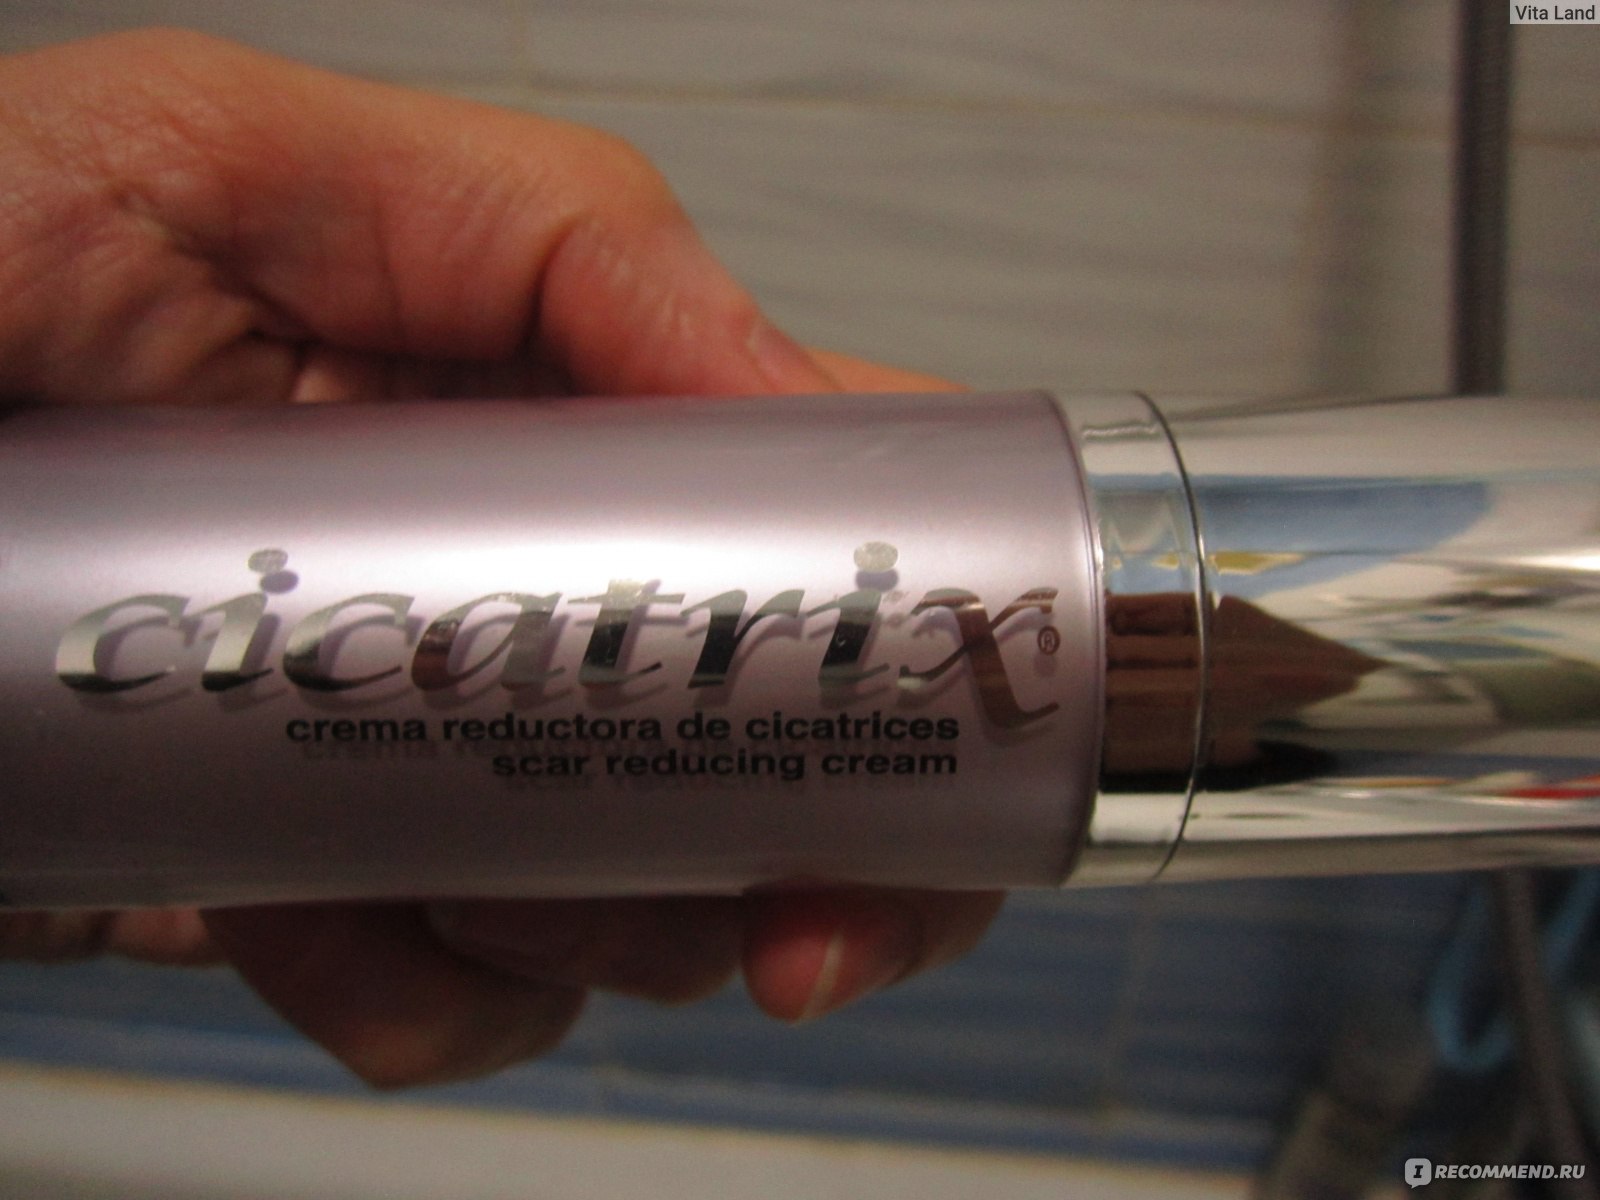 Крем Cicatrix, фирмы Catalysis, Espania для рассасывания рубцов и шрамов фото